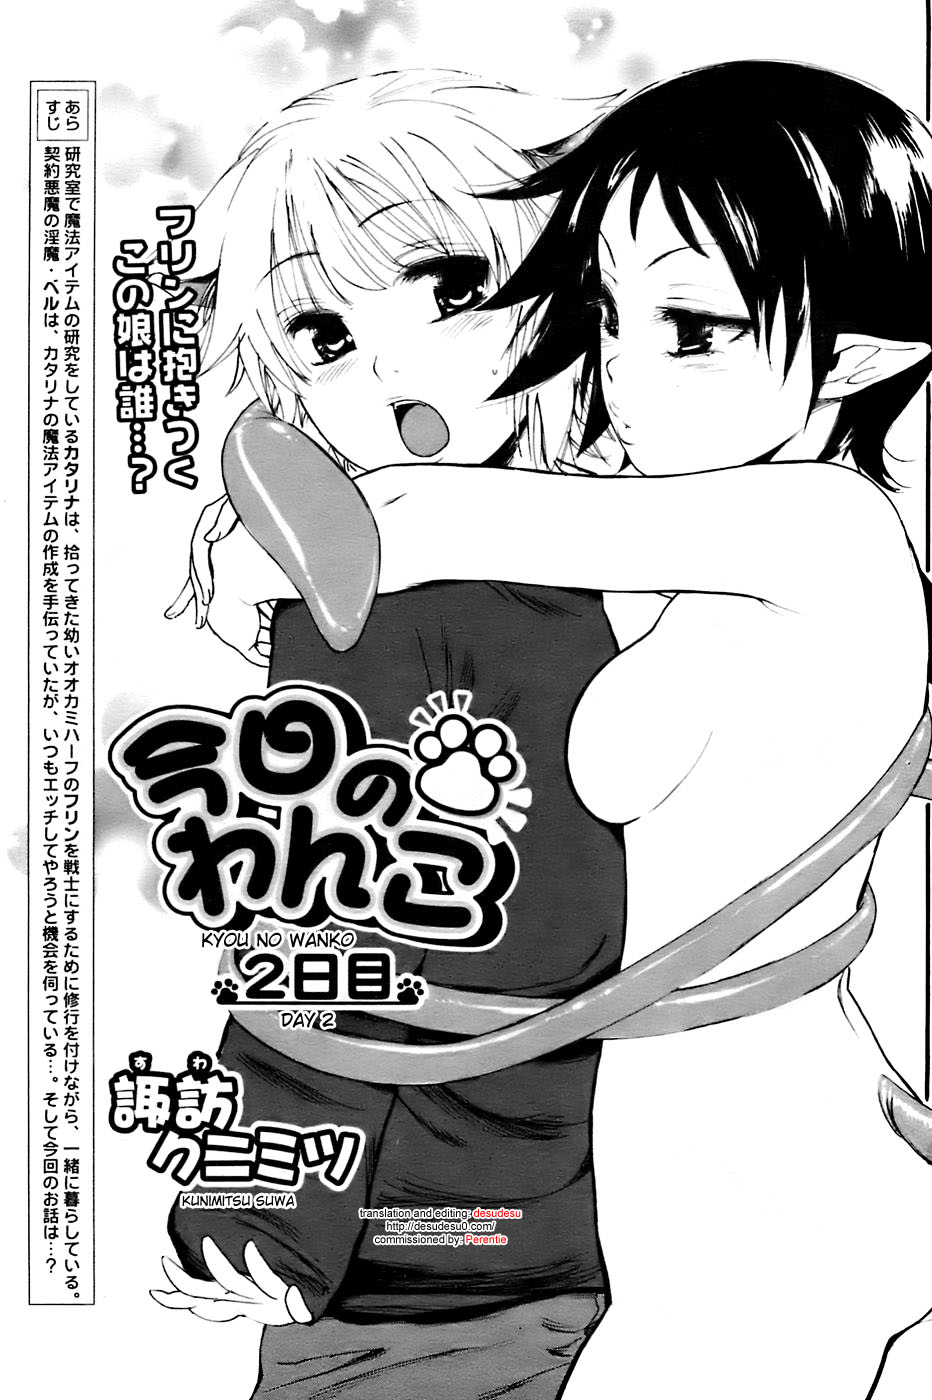 [Kunimitsu Suwa] Kyou no Wanko day 2 [ENG] page 1 full